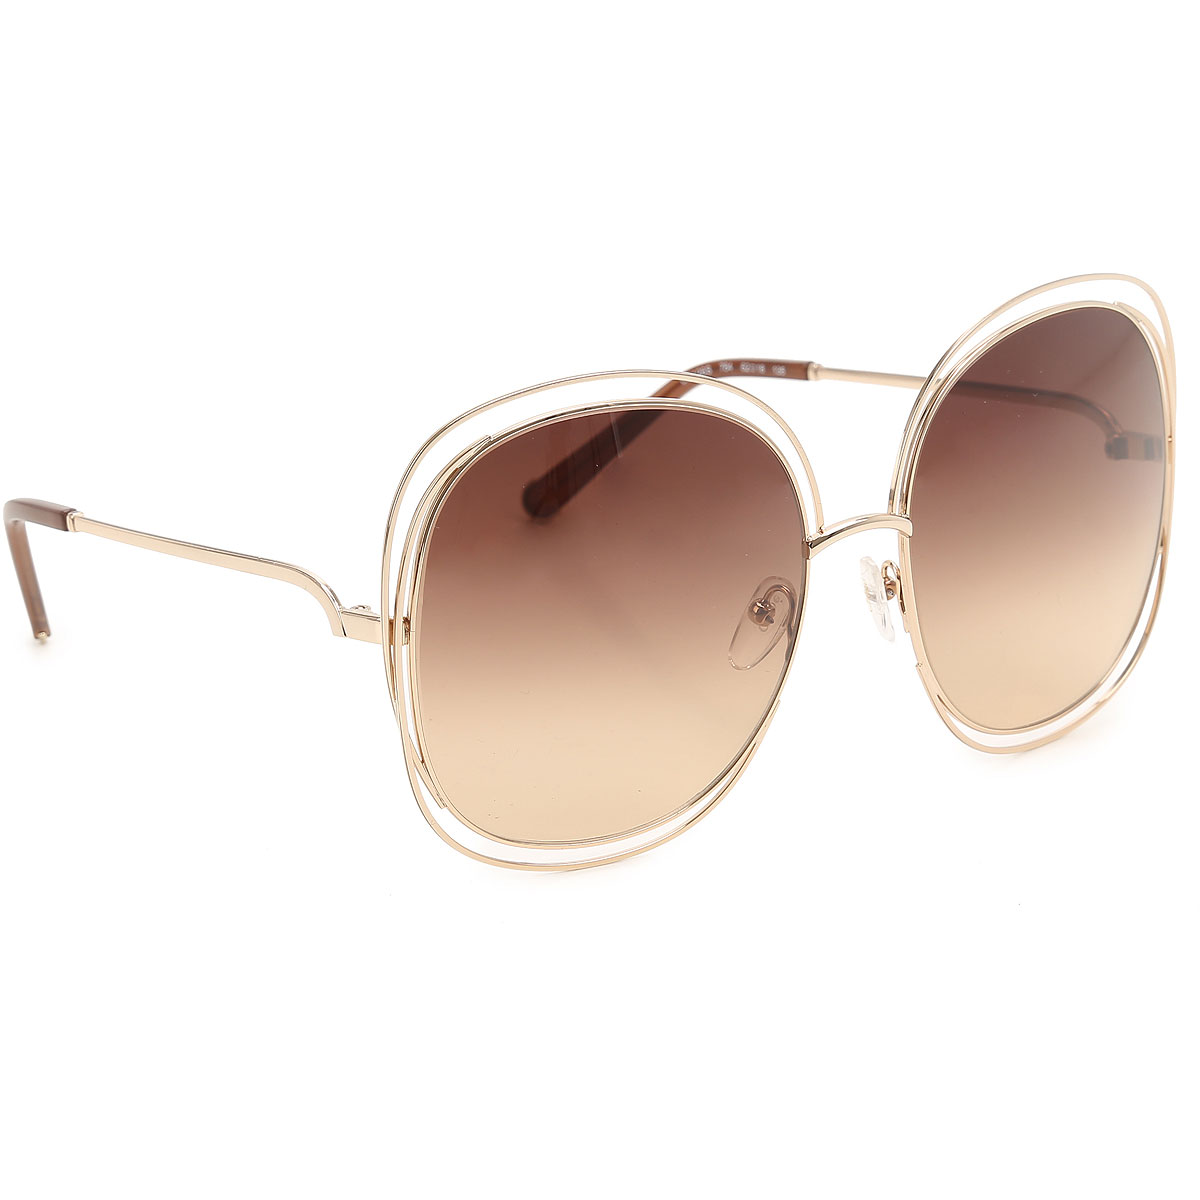 Sunglasses Chloe, Style code: ce126s-784-N42